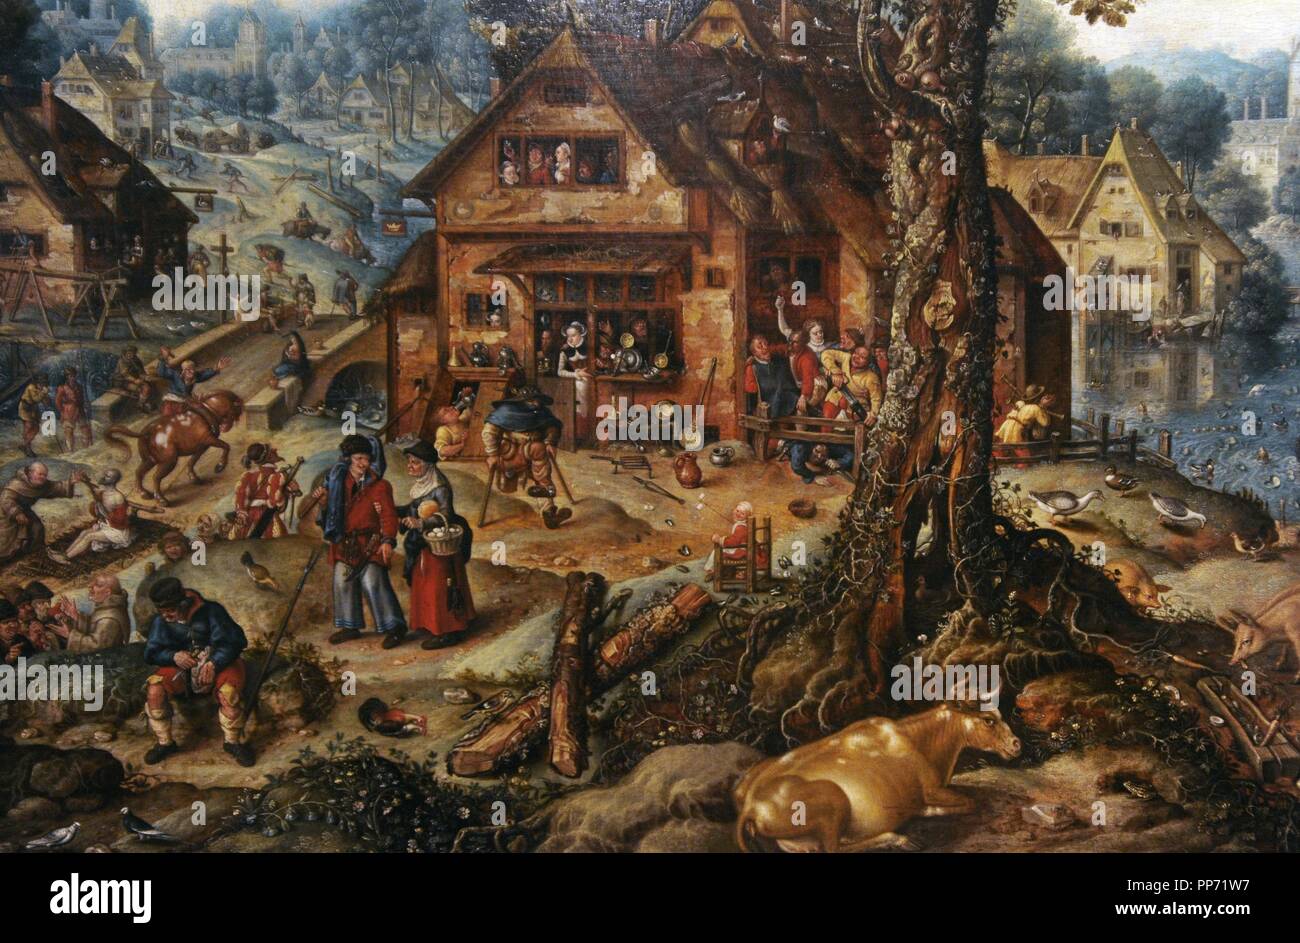 Hans Bol (1534-1593). Peintre flamand. Scène de village, 16e C. Galerie Nationale. Prague (Sternberg Palace). République tchèque. Banque D'Images